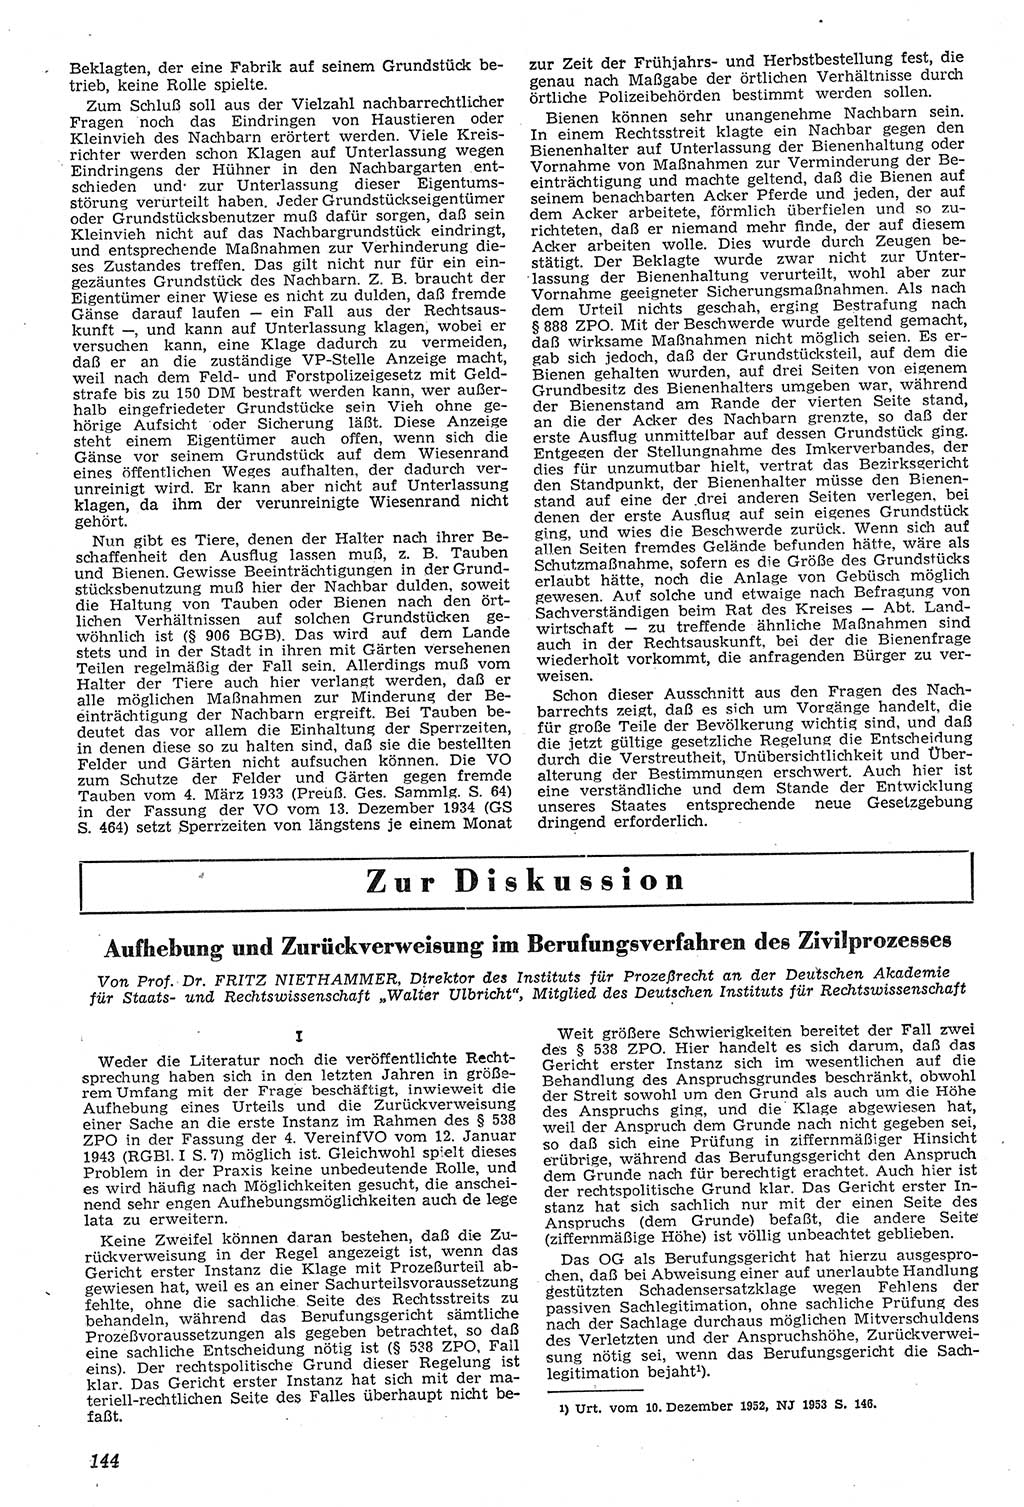 Neue Justiz (NJ), Zeitschrift für Recht und Rechtswissenschaft [Deutsche Demokratische Republik (DDR)], 11. Jahrgang 1957, Seite 144 (NJ DDR 1957, S. 144)